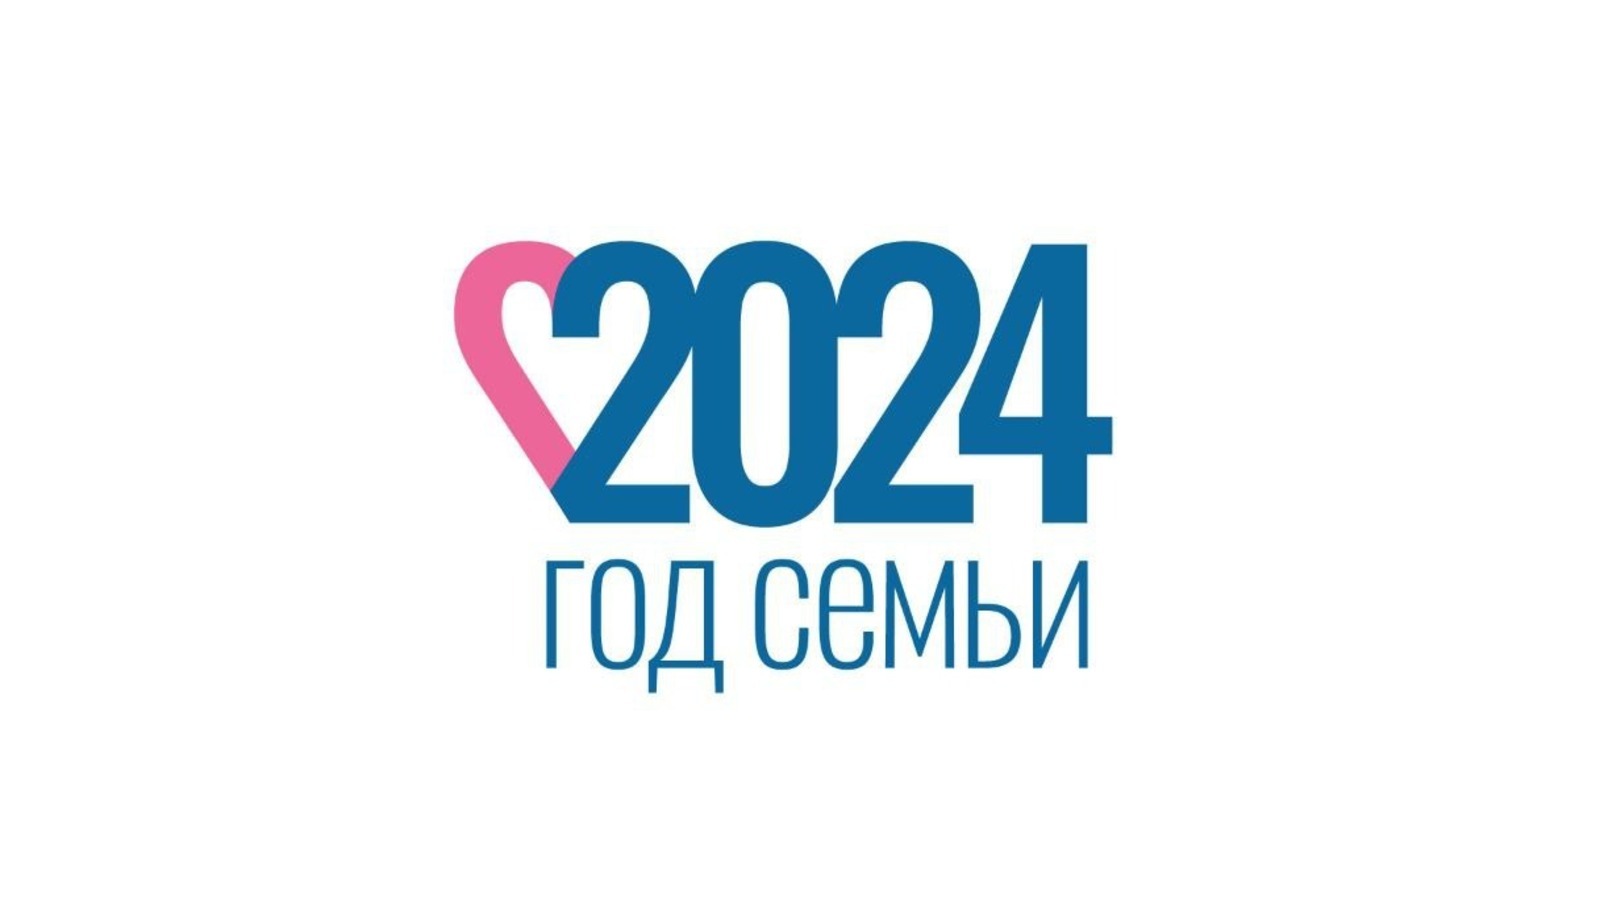 Утверждён официальный логотип Года семьи в России